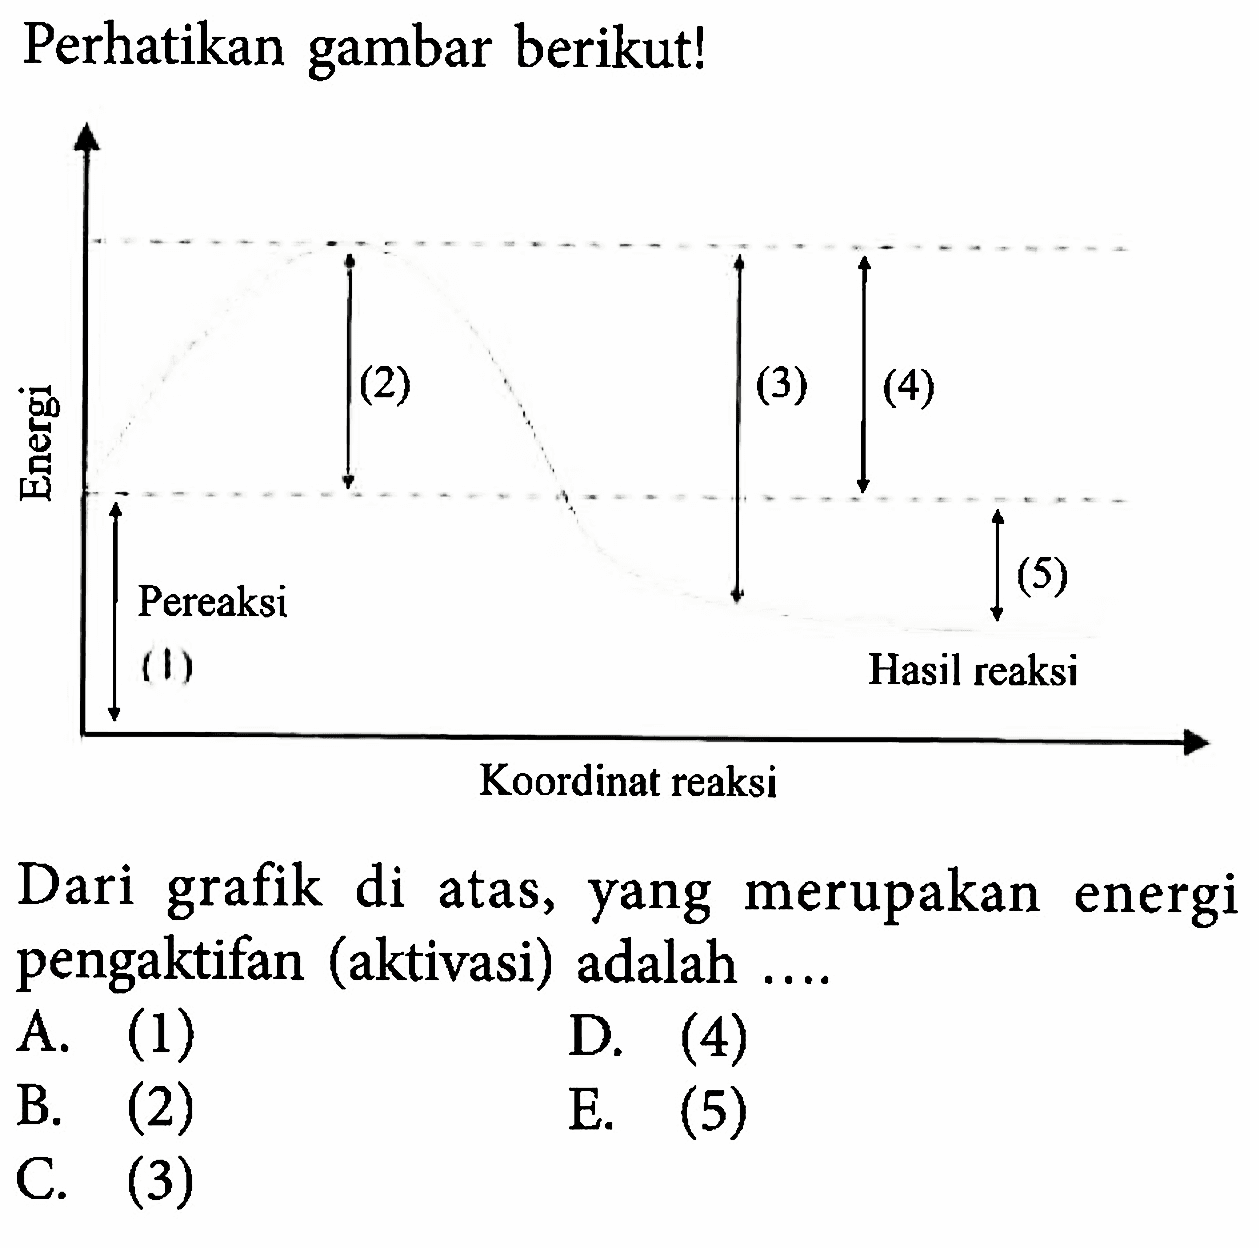 Perhatikan gambar berikut! Energi Pereaksi (1) (2) (3) (4) (5) Pereaksi Hasil reaksi Koordinat reaksi Dari grafik di atas, yang merupakan energi pengaktifan (aktivasi) adalah A. (1) D. (4) B. (2) E. (5) C. (3)